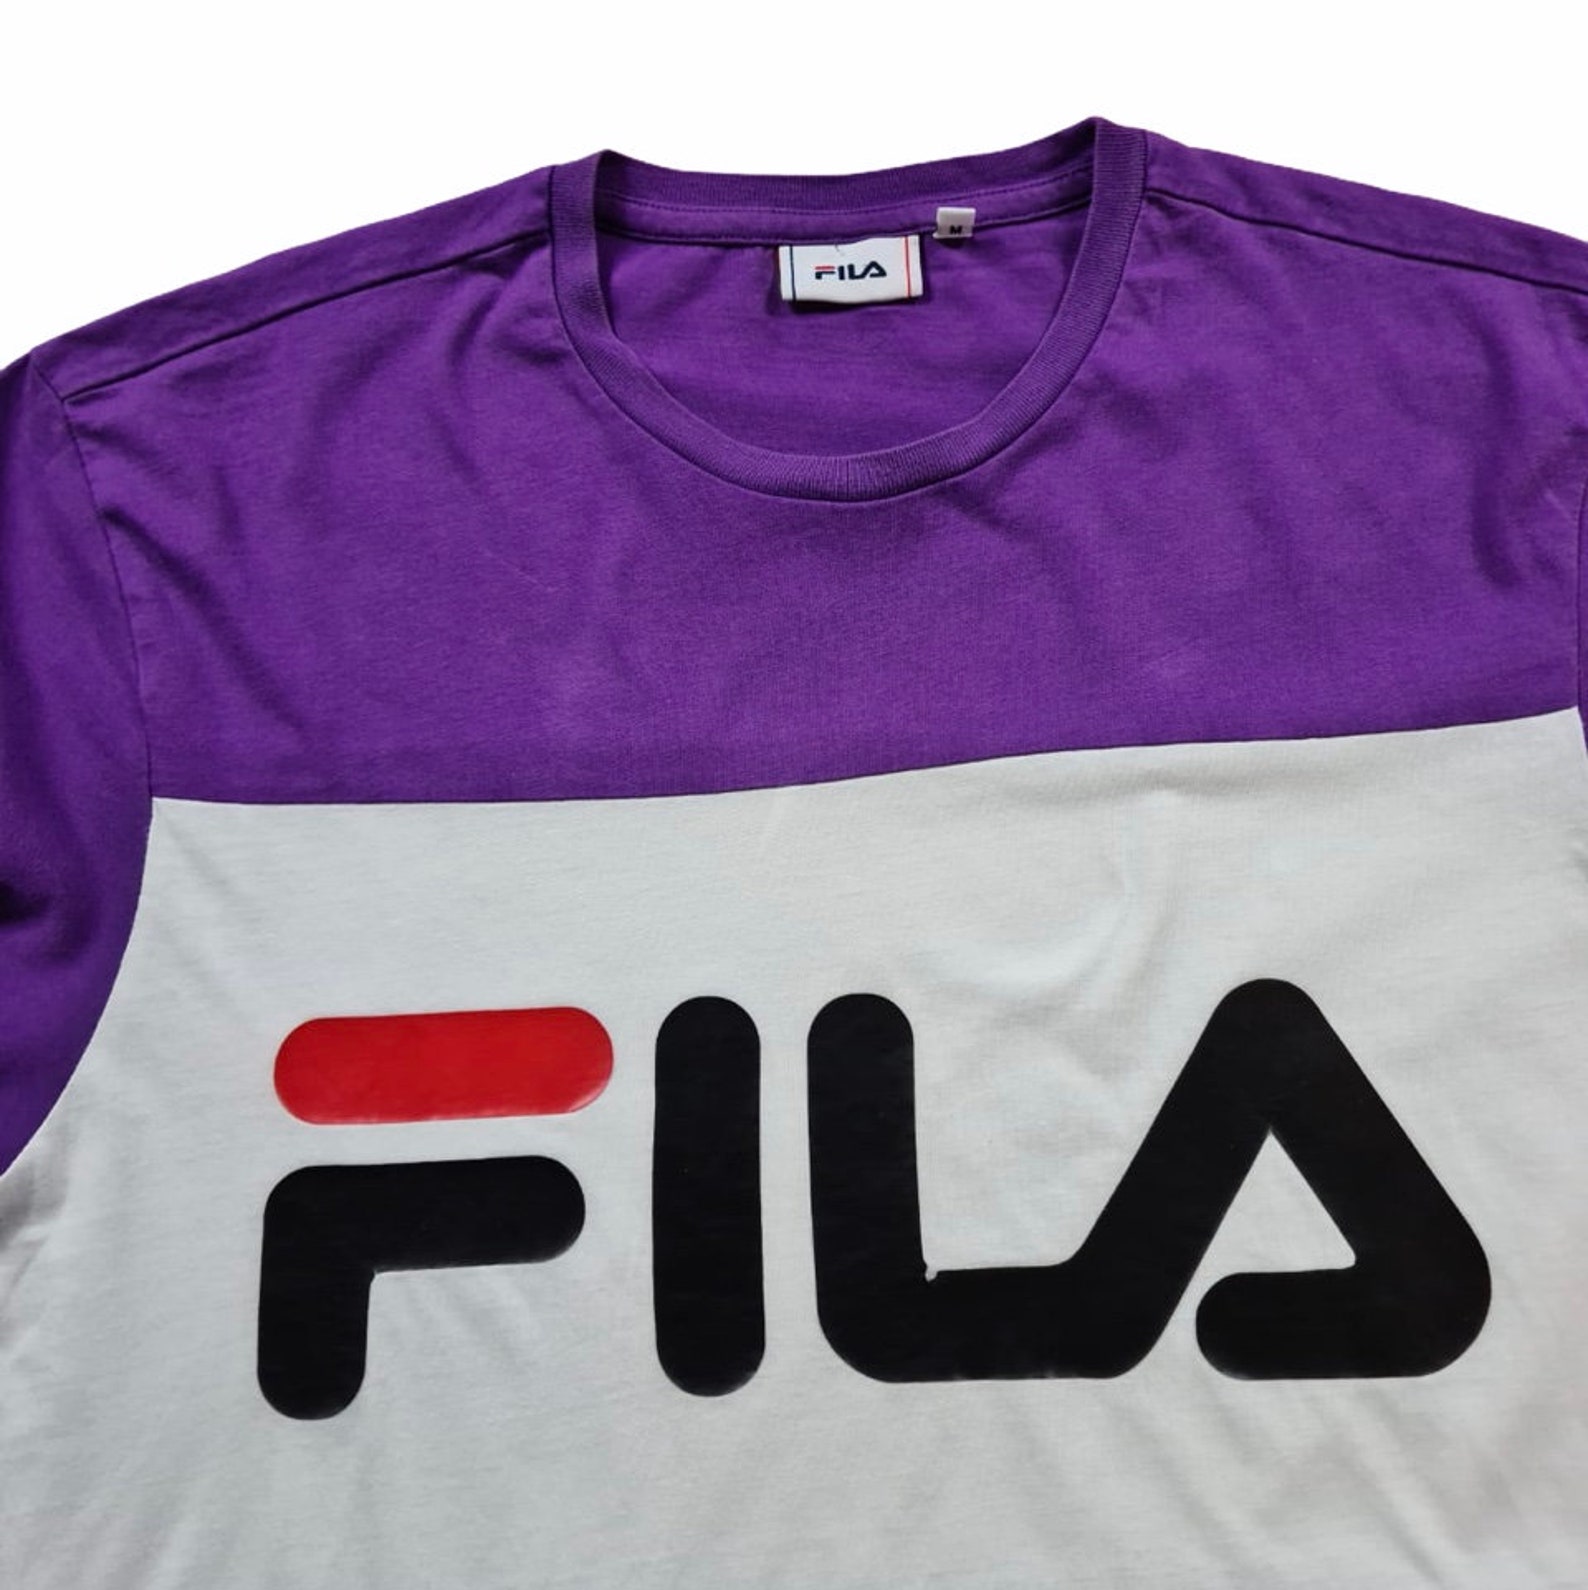 Fila Colourblock T Shirt - Etsy